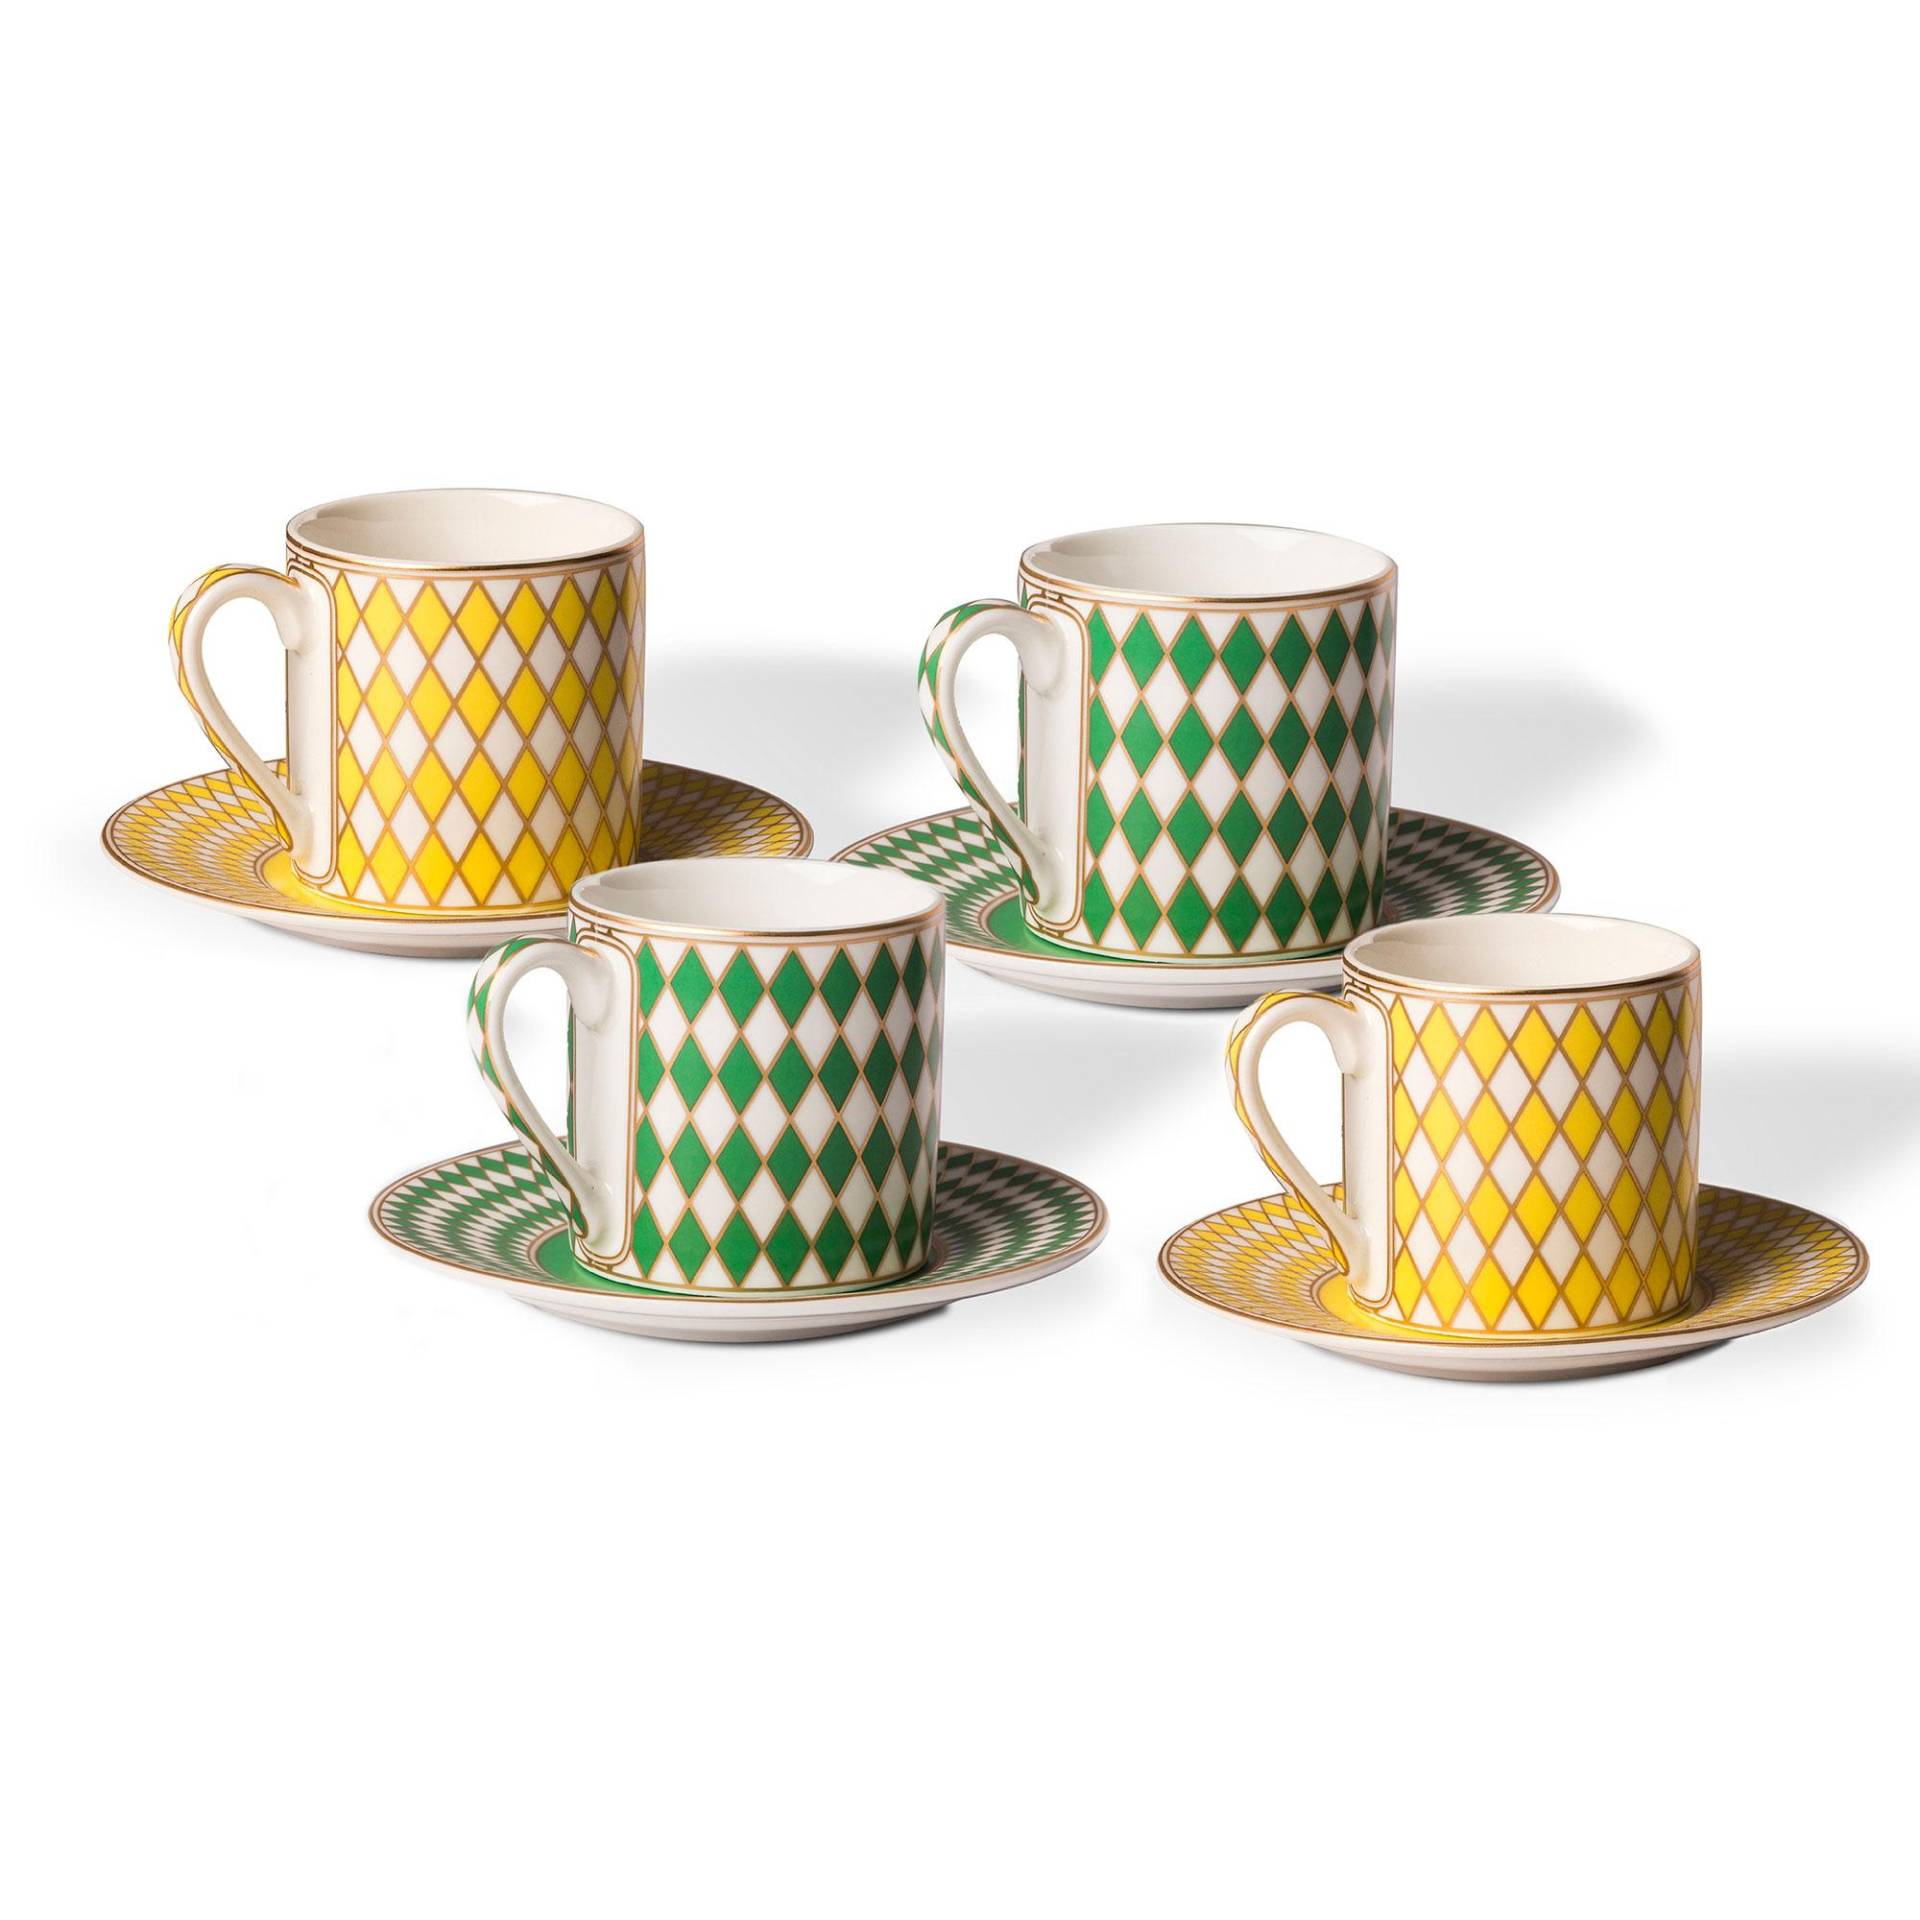 pols potten - Chess Espressotasse 4er Set - grün, gelb, gold/matt glasiert/LxBxH 8x5,9x6cm/ 100ml/mit Untertasse H x Ø 1,6x11,7cm von pols potten